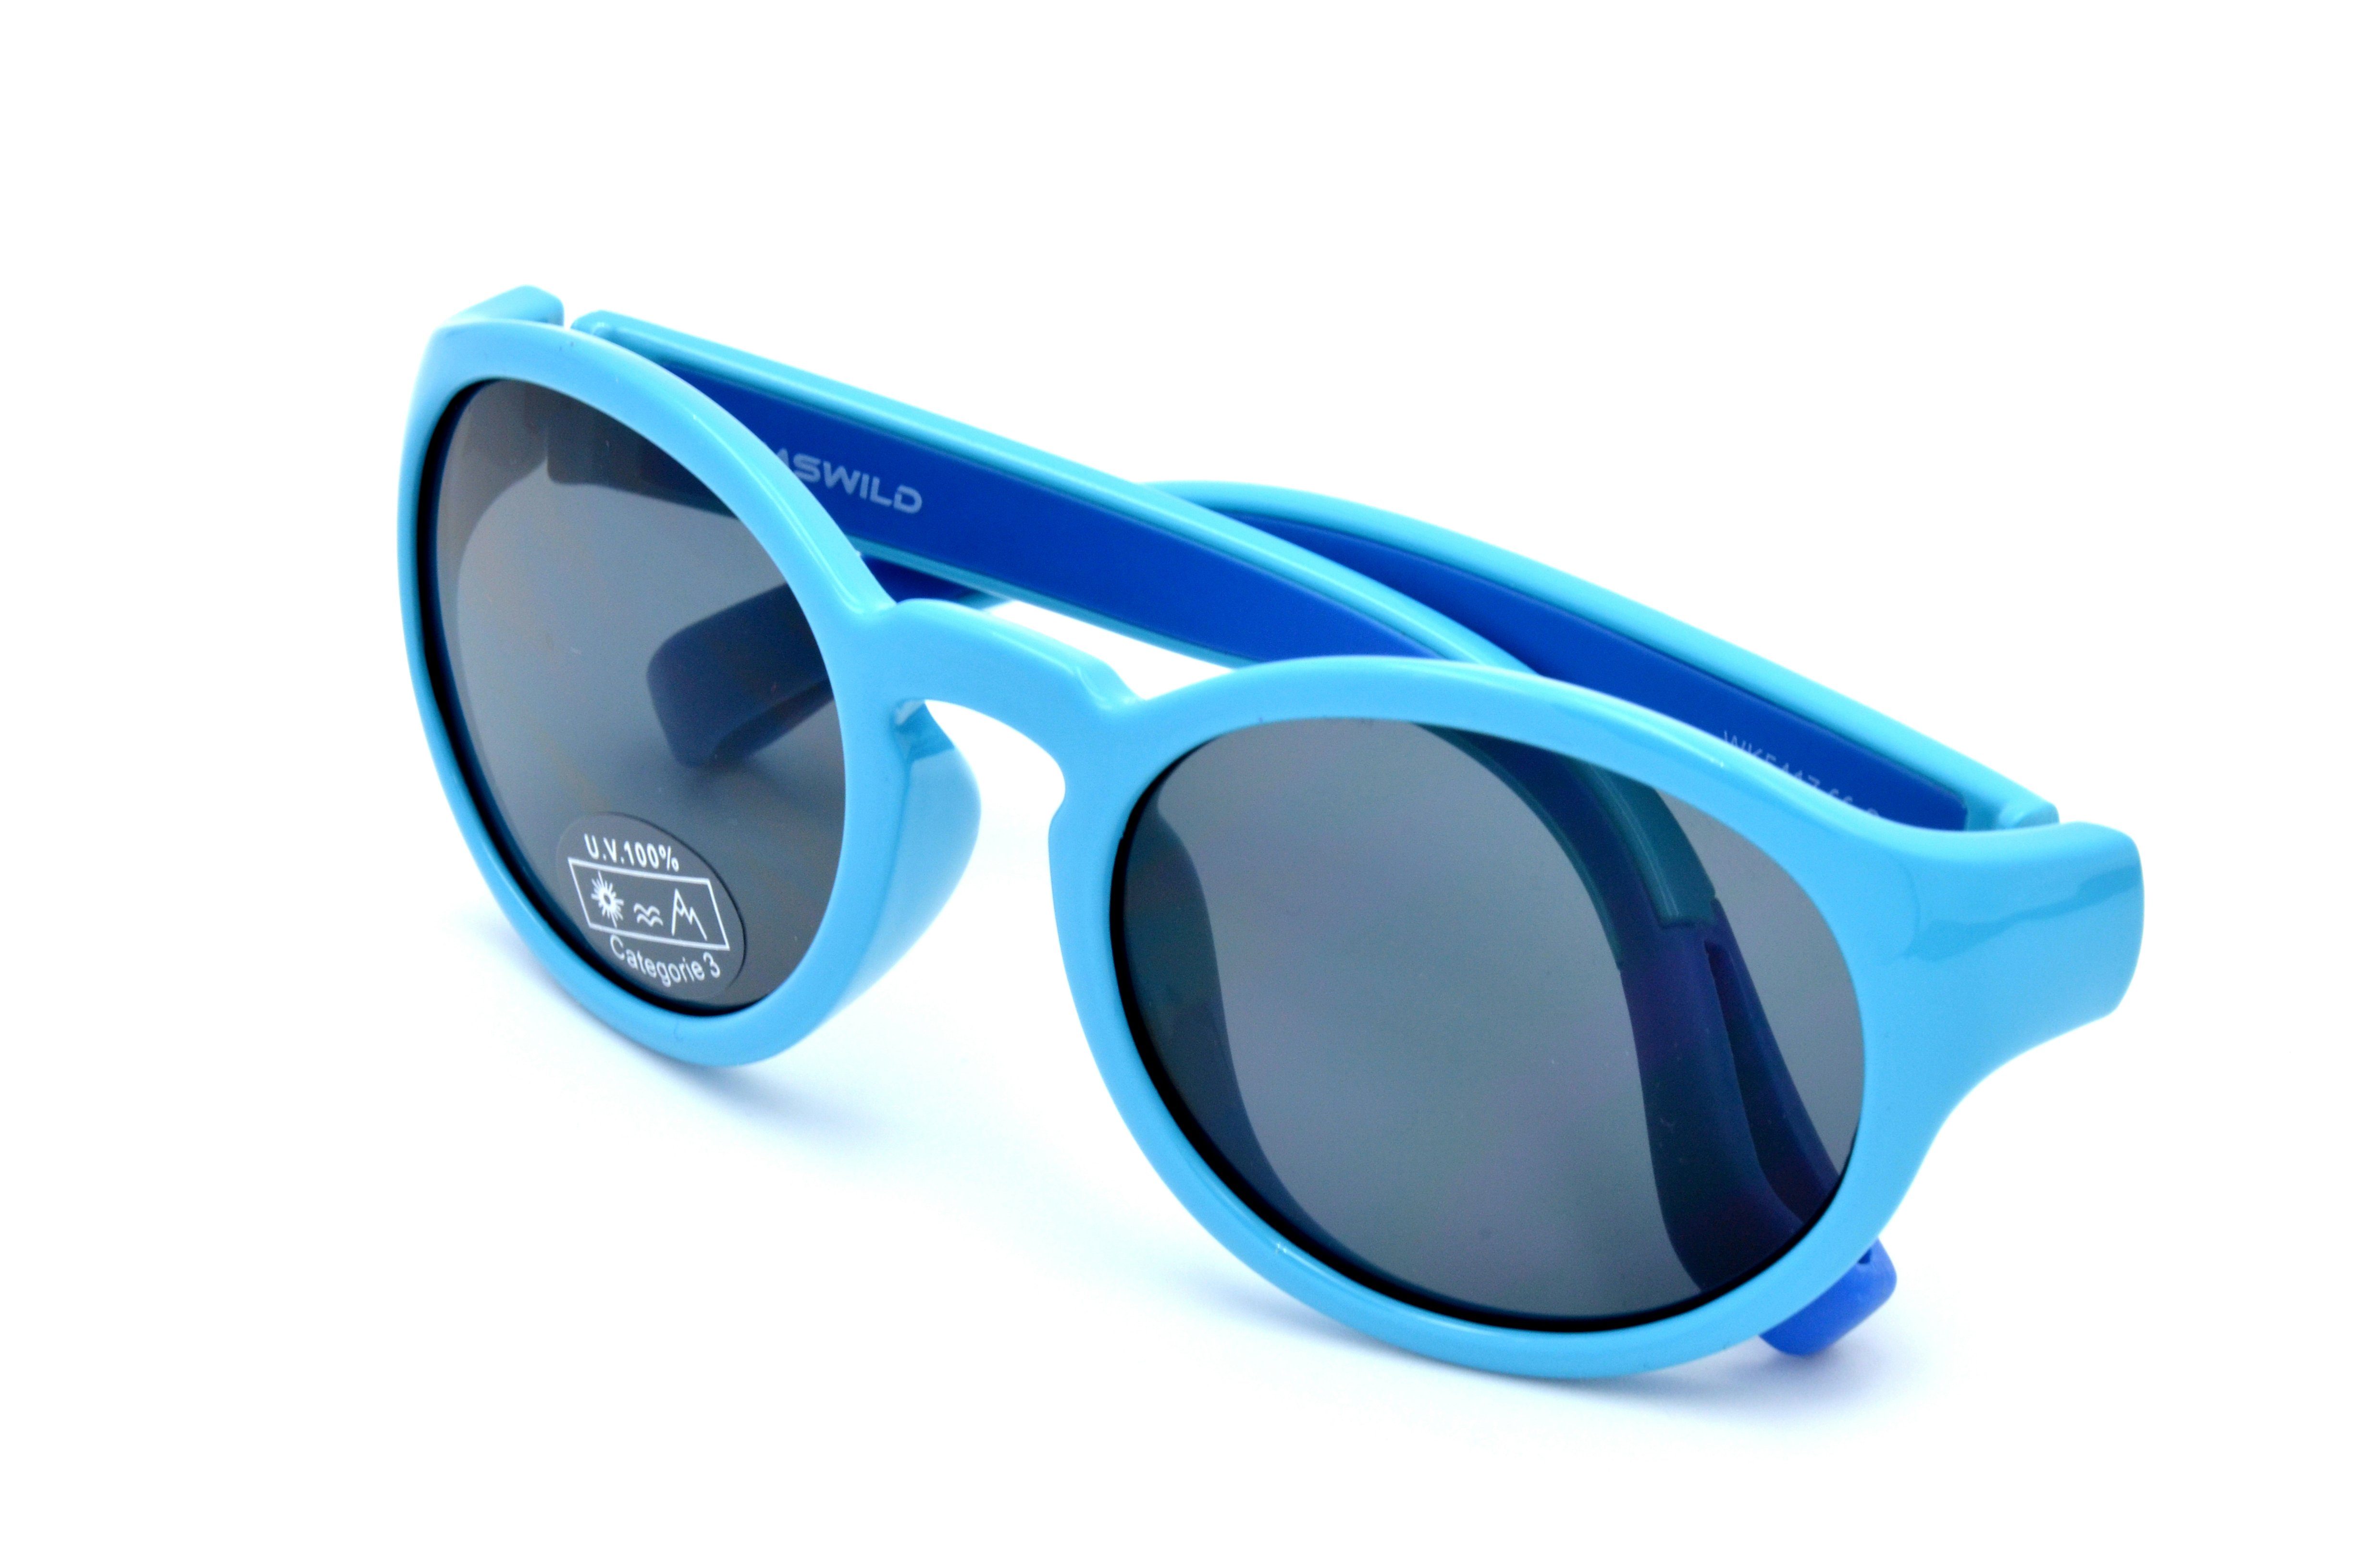 Gamswild Sonnenbrille WK5417 GAMSKIDS blau, Jungen Kleinkindbrille grün, lila Kinderbrille Jahre Unisex, 5-10 kids Mädchen